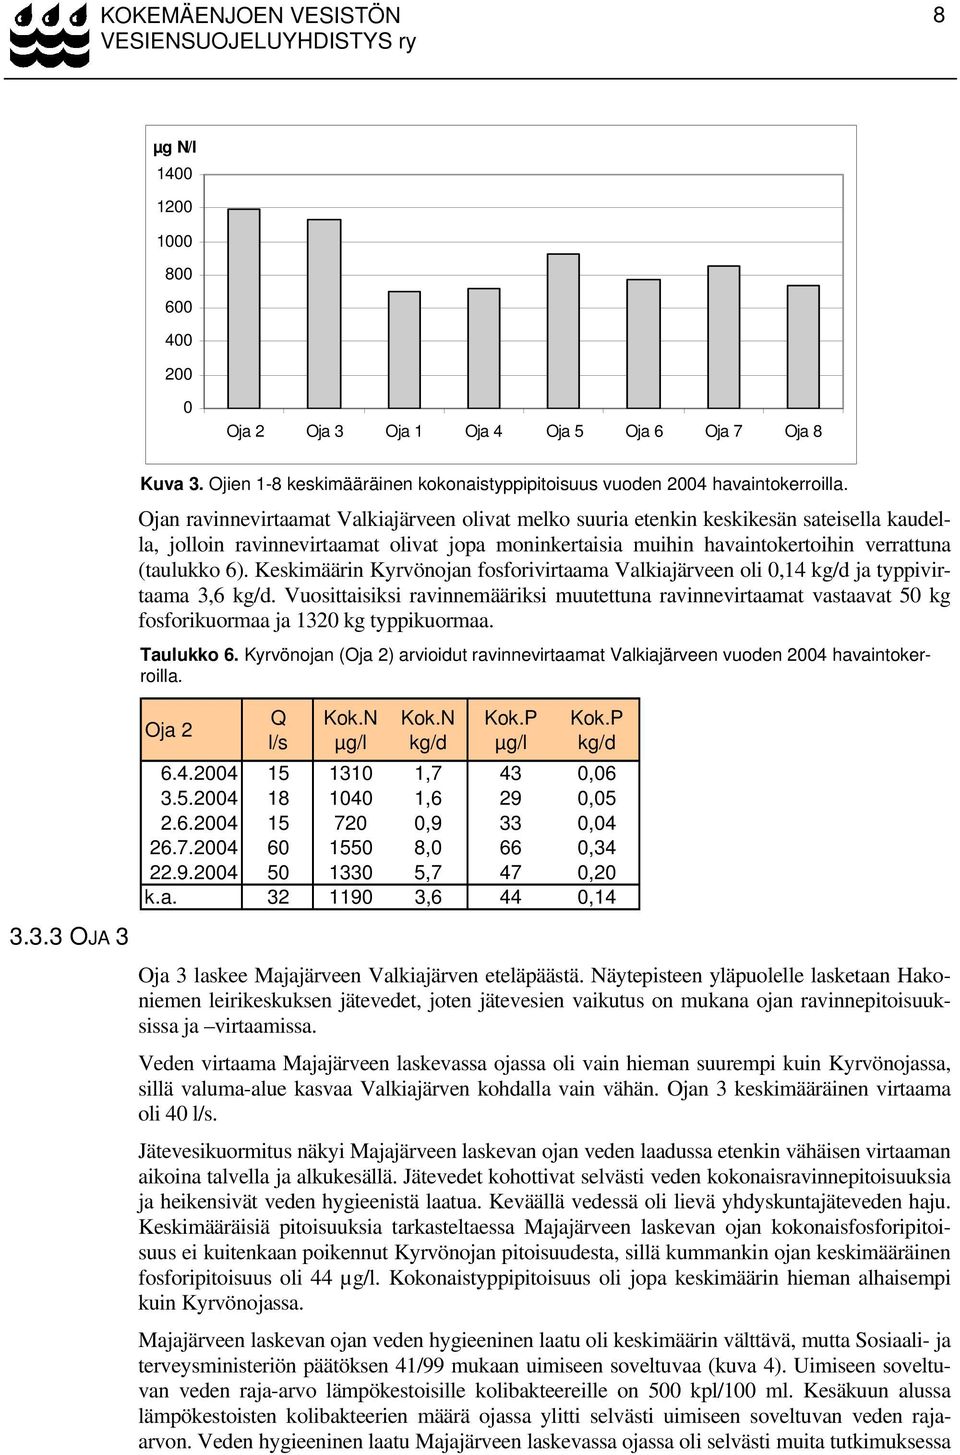 Keskimäärin Kyrvönojan fosforivirtaama Valkiajärveen oli 0,14 ja typpivirtaama 3,6. Vuosittaisiksi ravinnemääriksi muutettuna ravinnevirtaamat vastaavat 50 kg fosforikuormaa ja 1320 kg typpikuormaa.